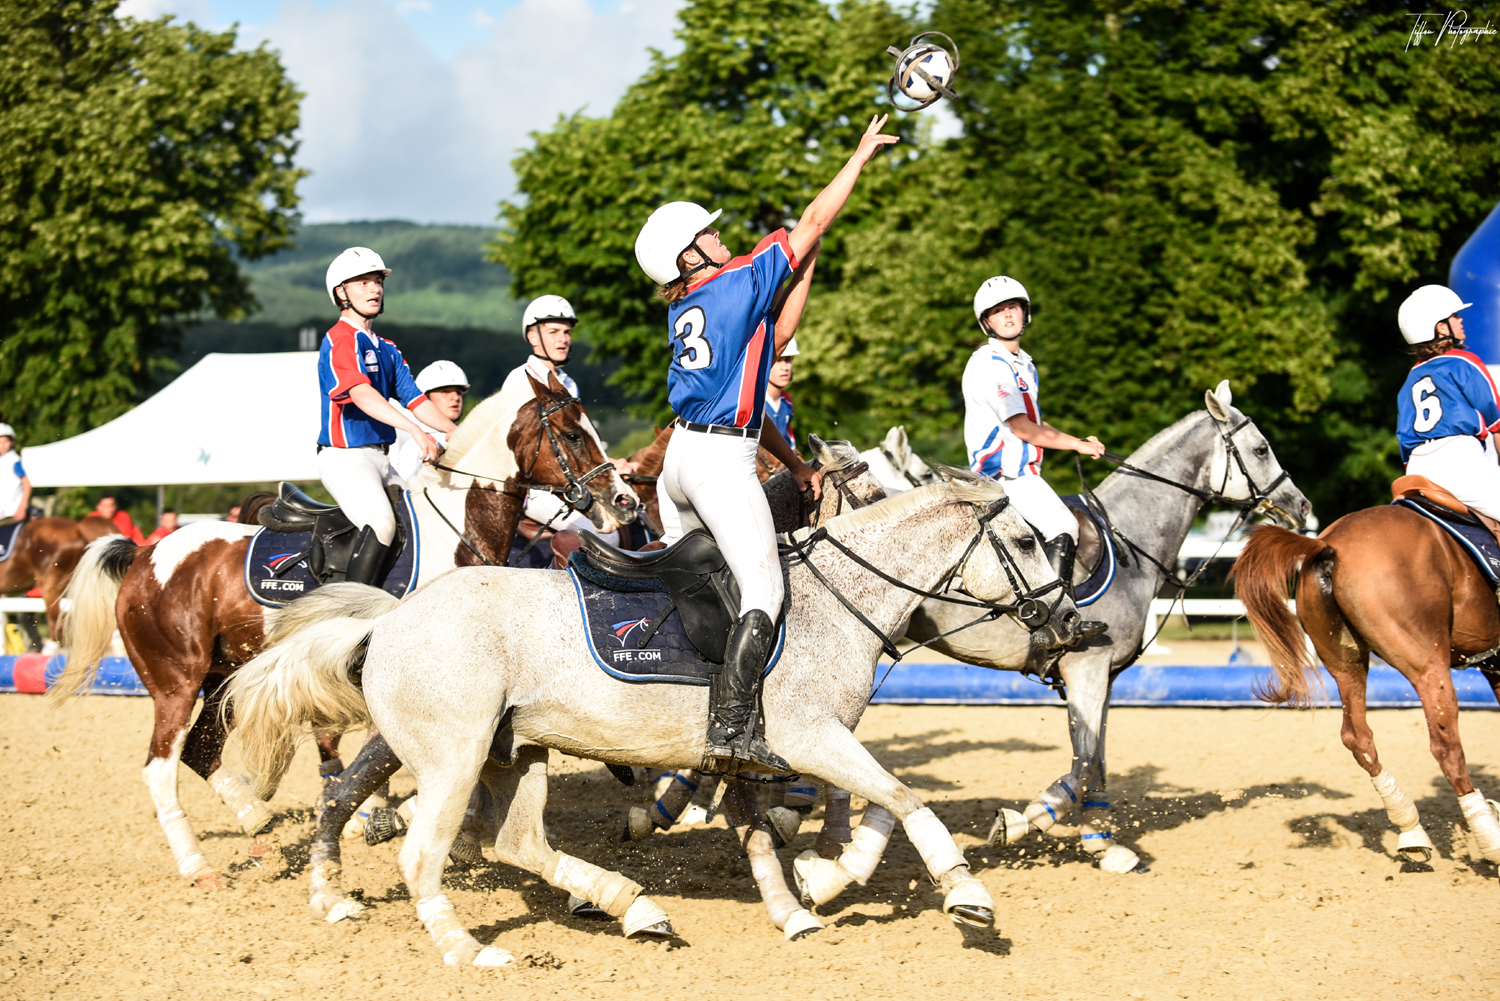 Polo, horse-ball… Les autres pratiques de l'équitation - Eurosport